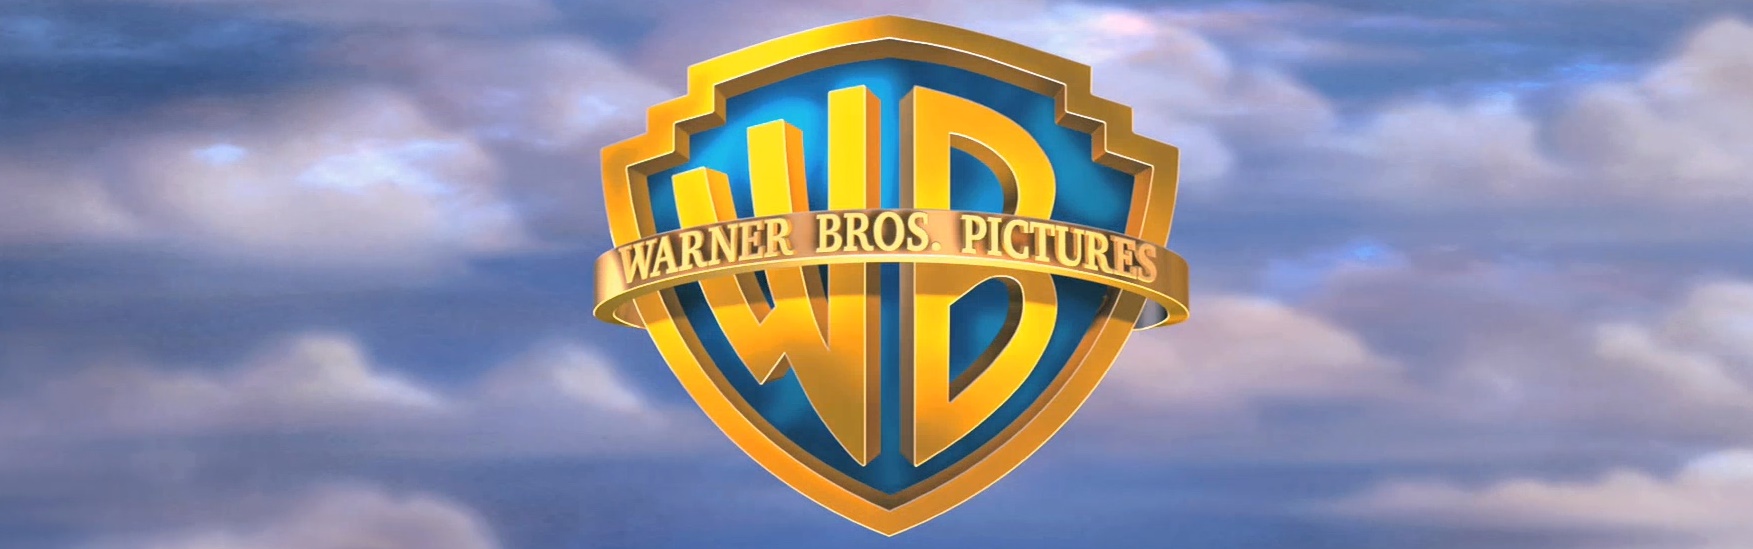 Warner objavio datume premijera filmova najavljenih za 2017.